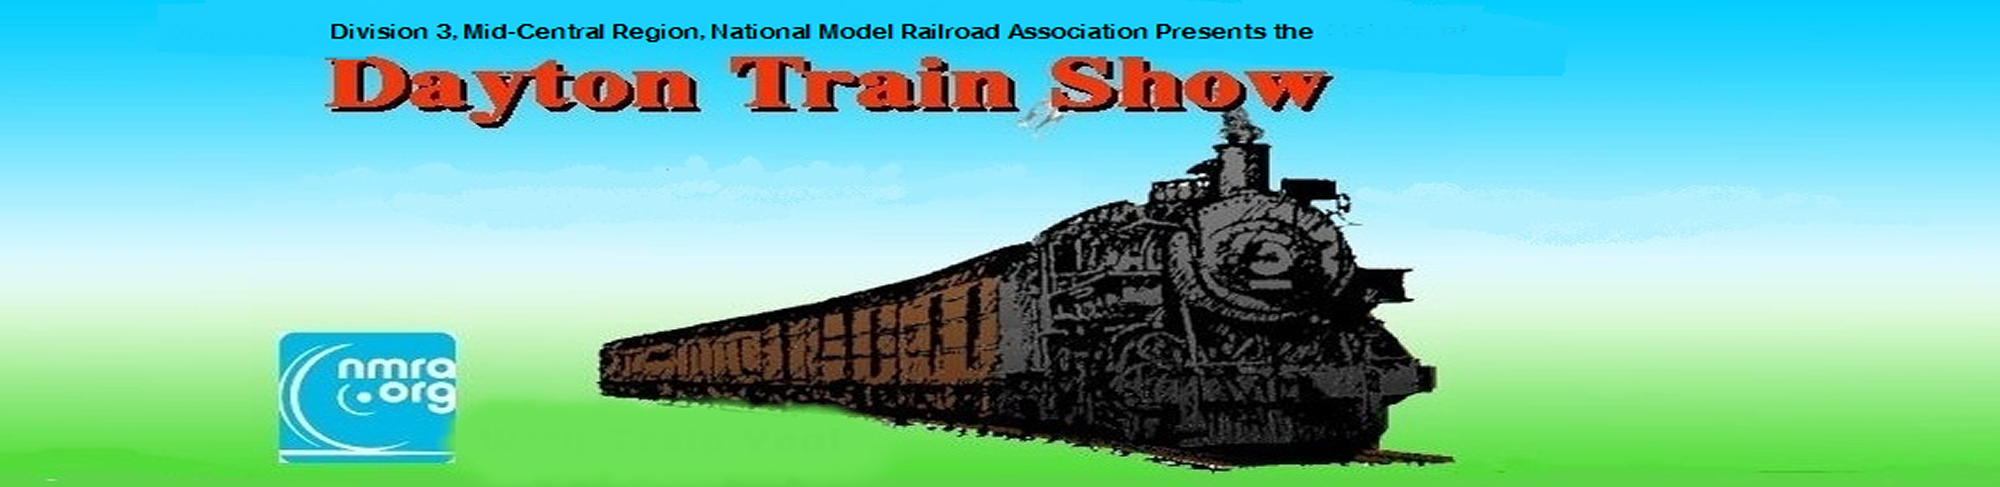 The Dayton Train Show